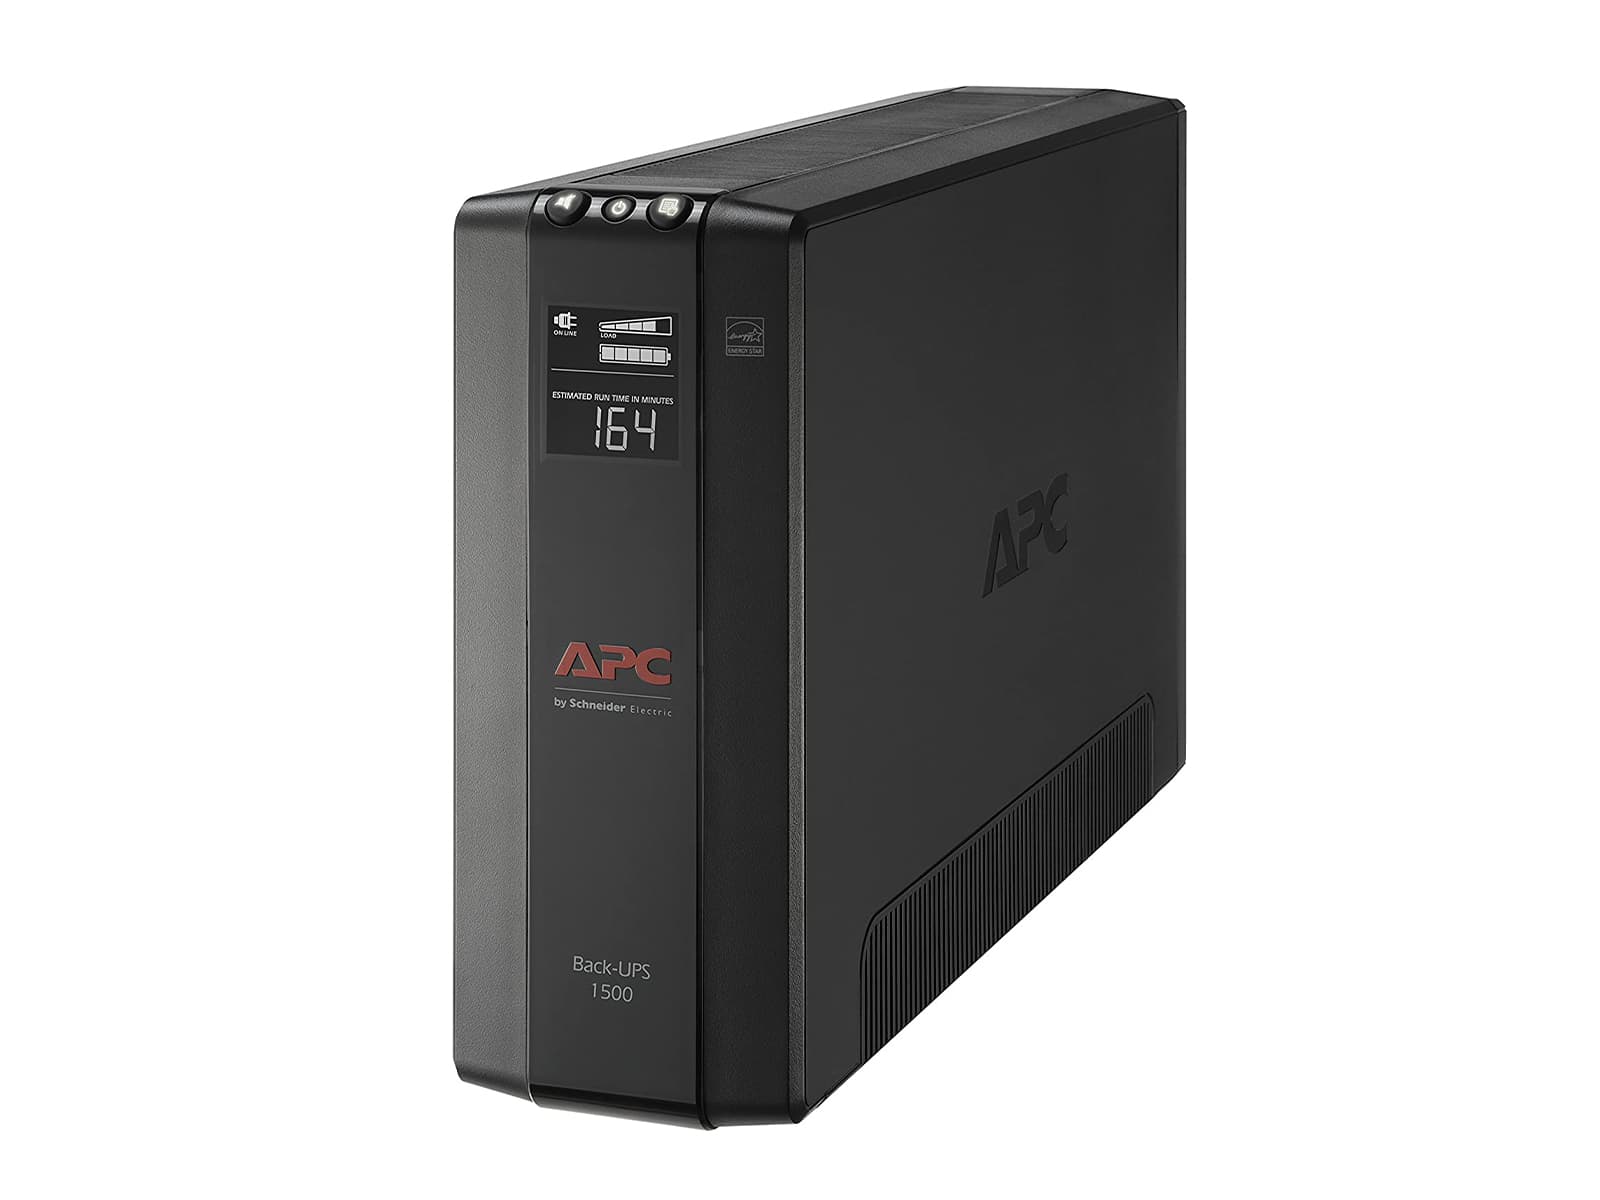 APC UPS, 1500 VA USV-Batterie-Backup und Überspannungsschutz mit AVR, Back-UPS Pro-Netzteil (BX1500M)